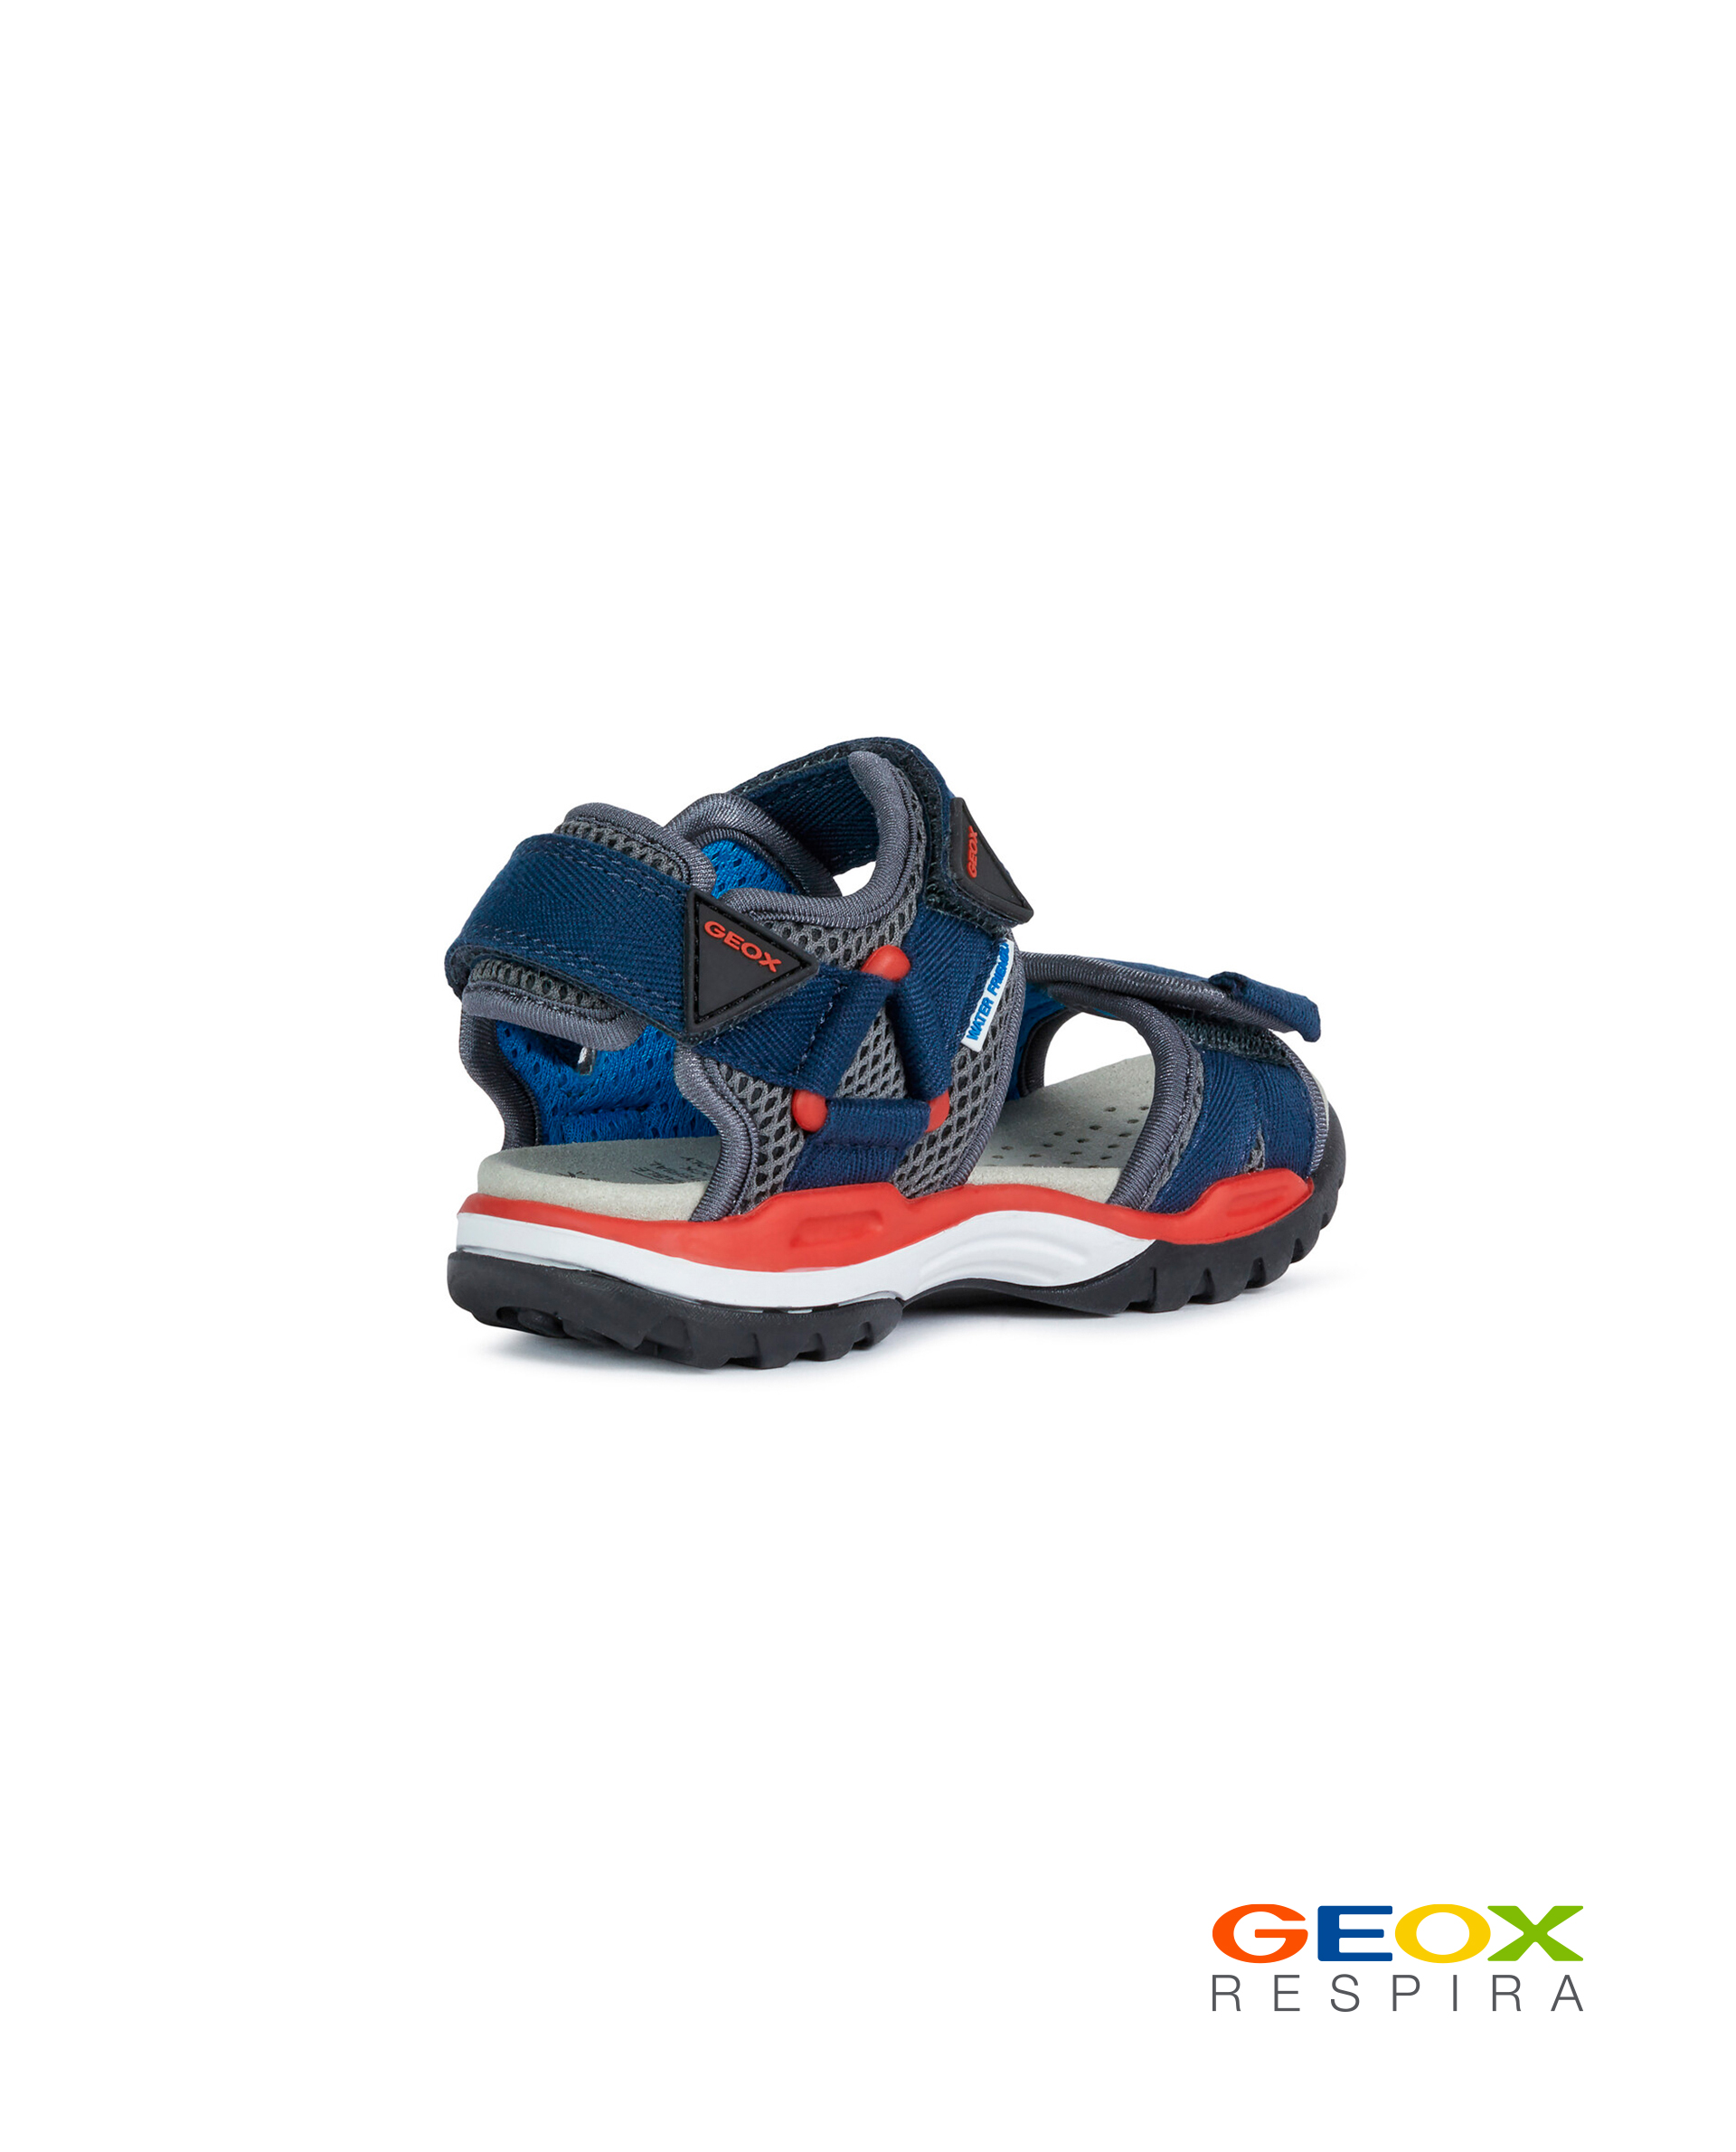 Синие сандалии Geox для мальчика J020RC01411C0735, размер 34, цвет синий - фото 3